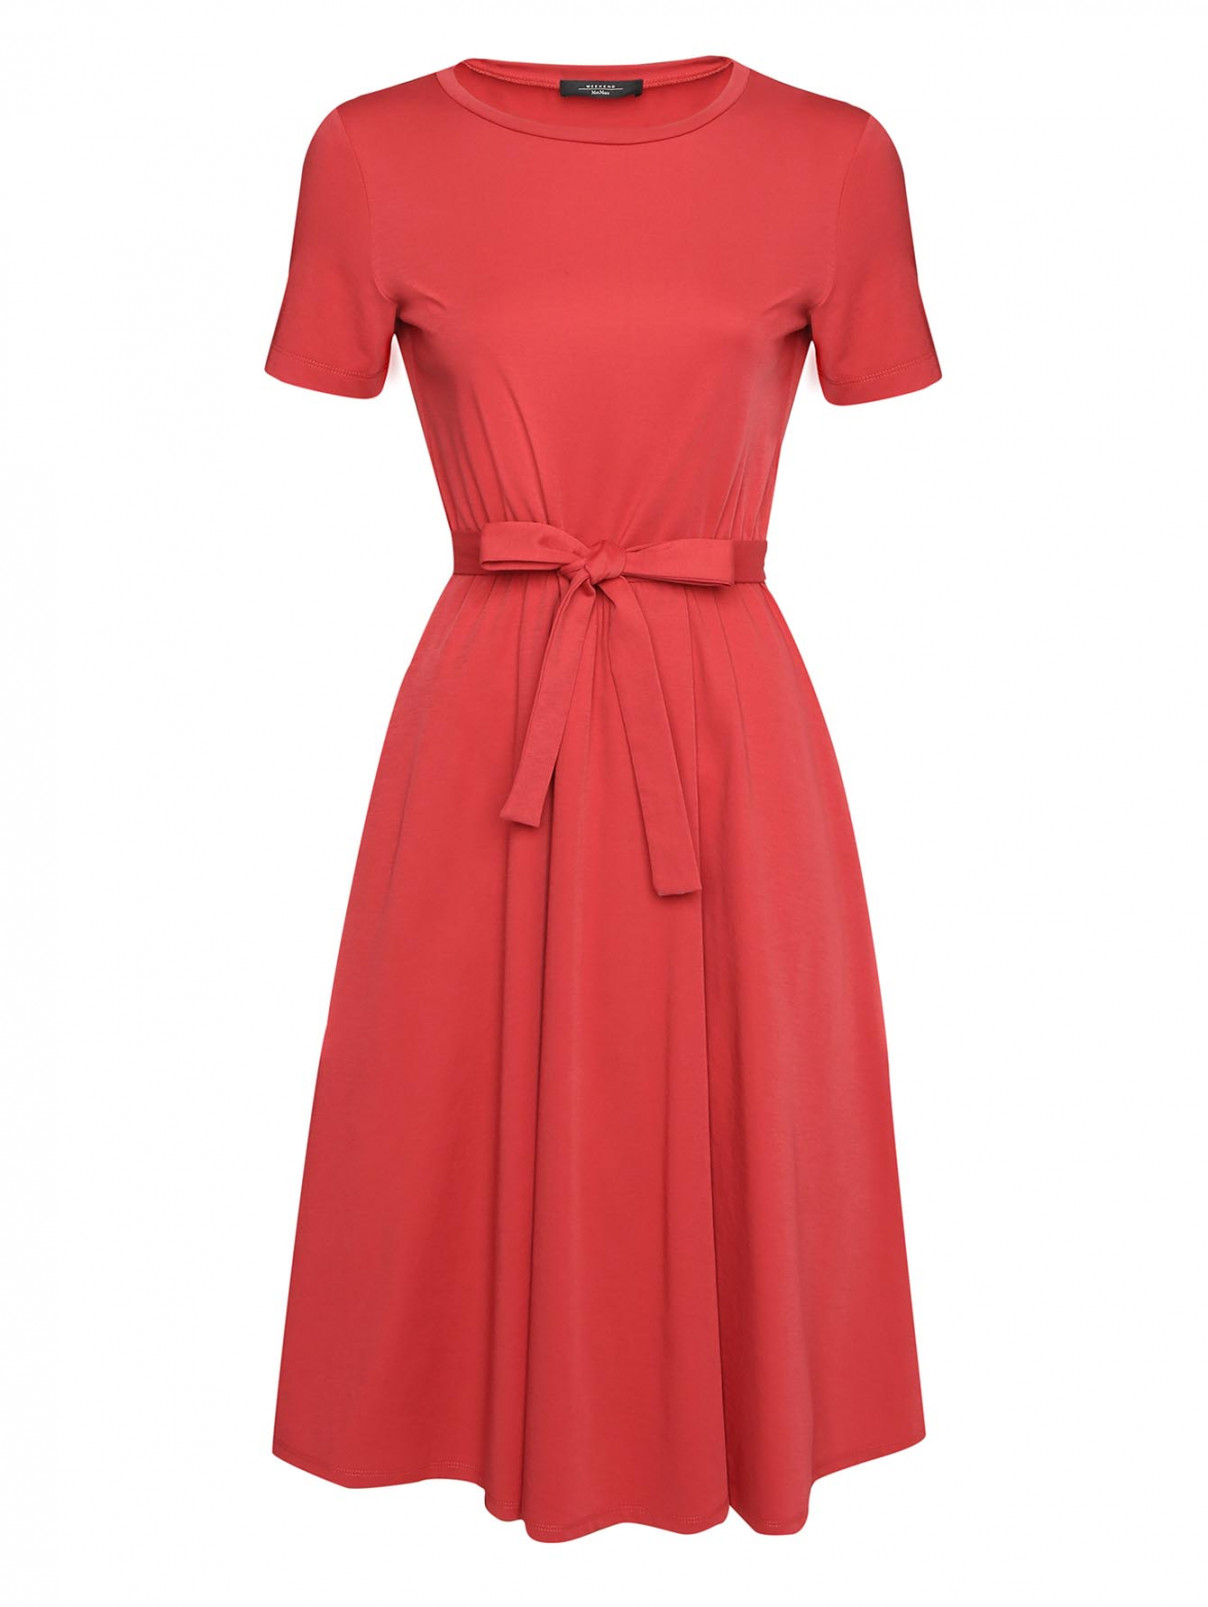 Платье трикотажное со сборкой на талии Weekend Max Mara  –  Общий вид  – Цвет:  Красный